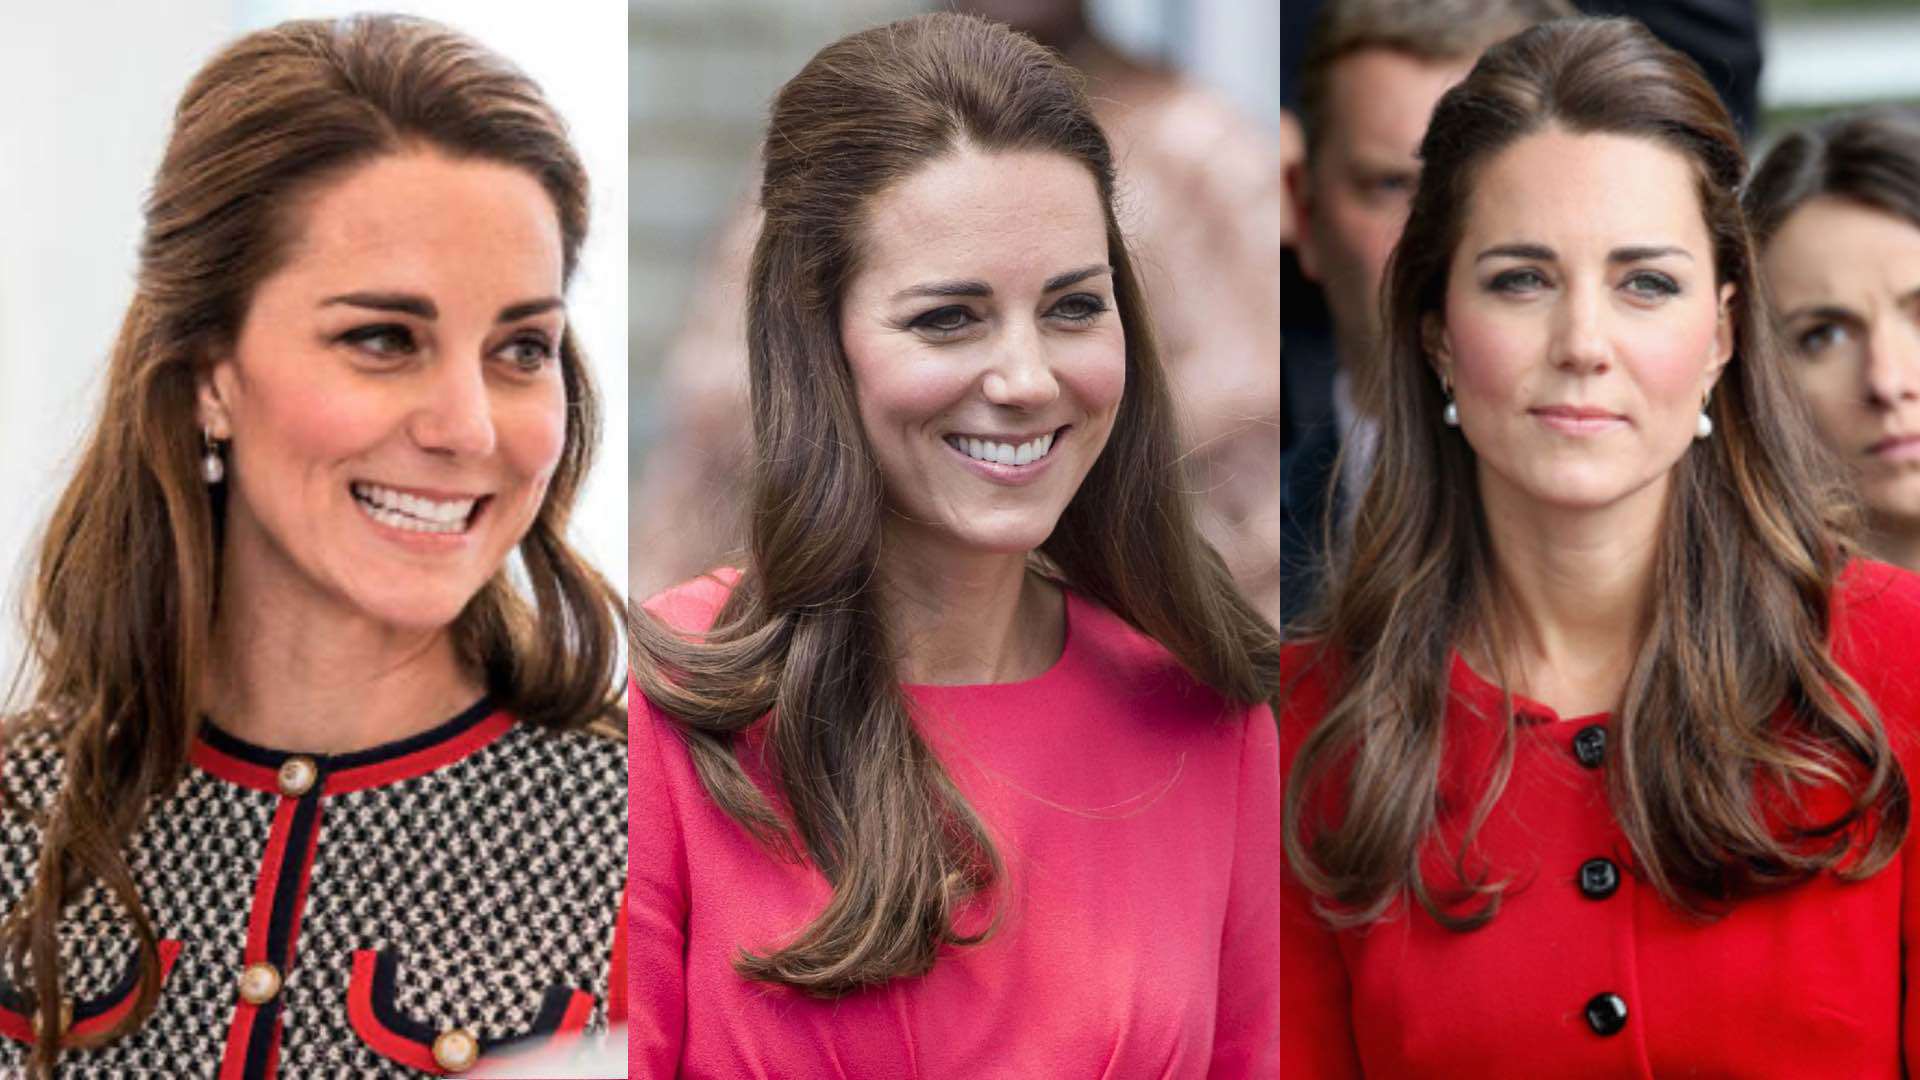 Công nương Kate luôn thay đổi đủ kiểu tóc đẹp, nhưng cô út chỉ có một - 6 kiểu